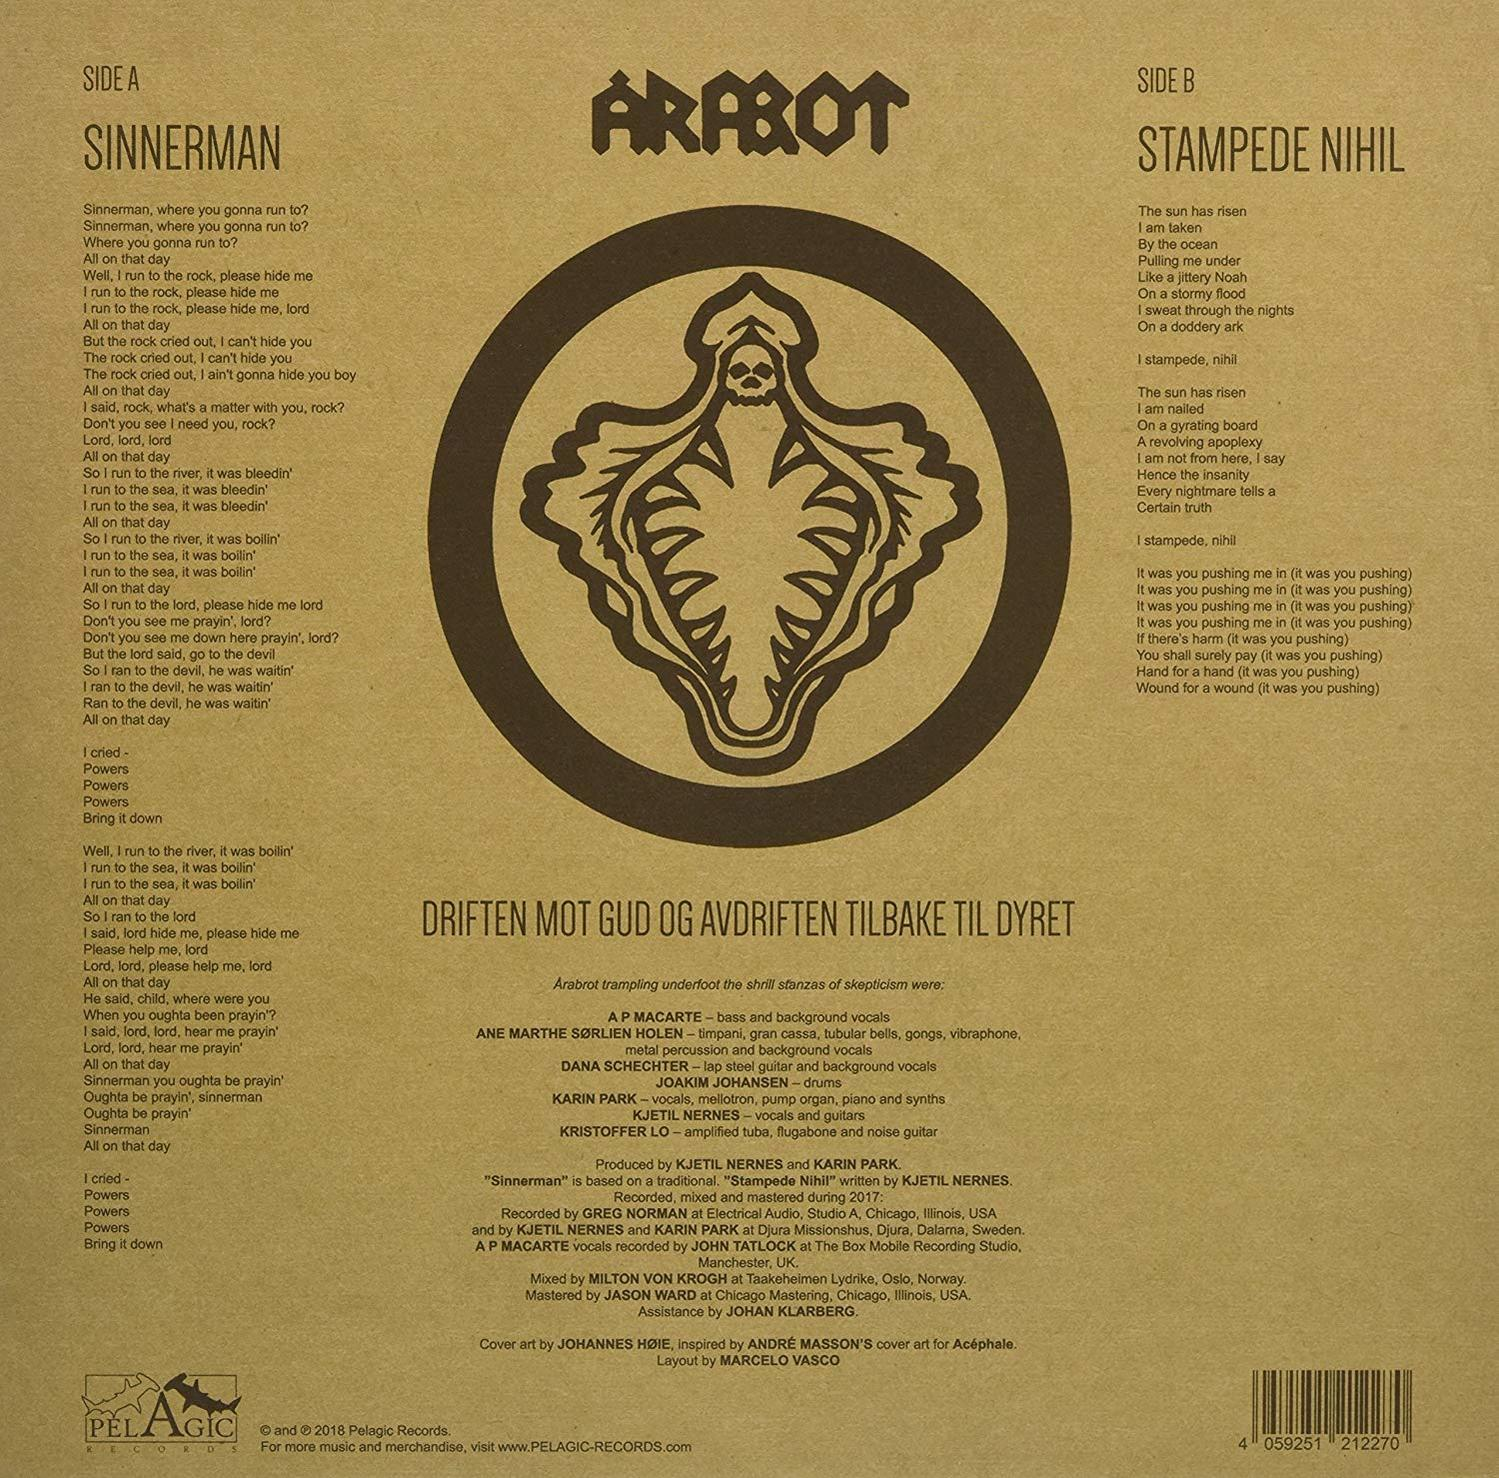 Arabrot - Sinnerman (Vinyl) 